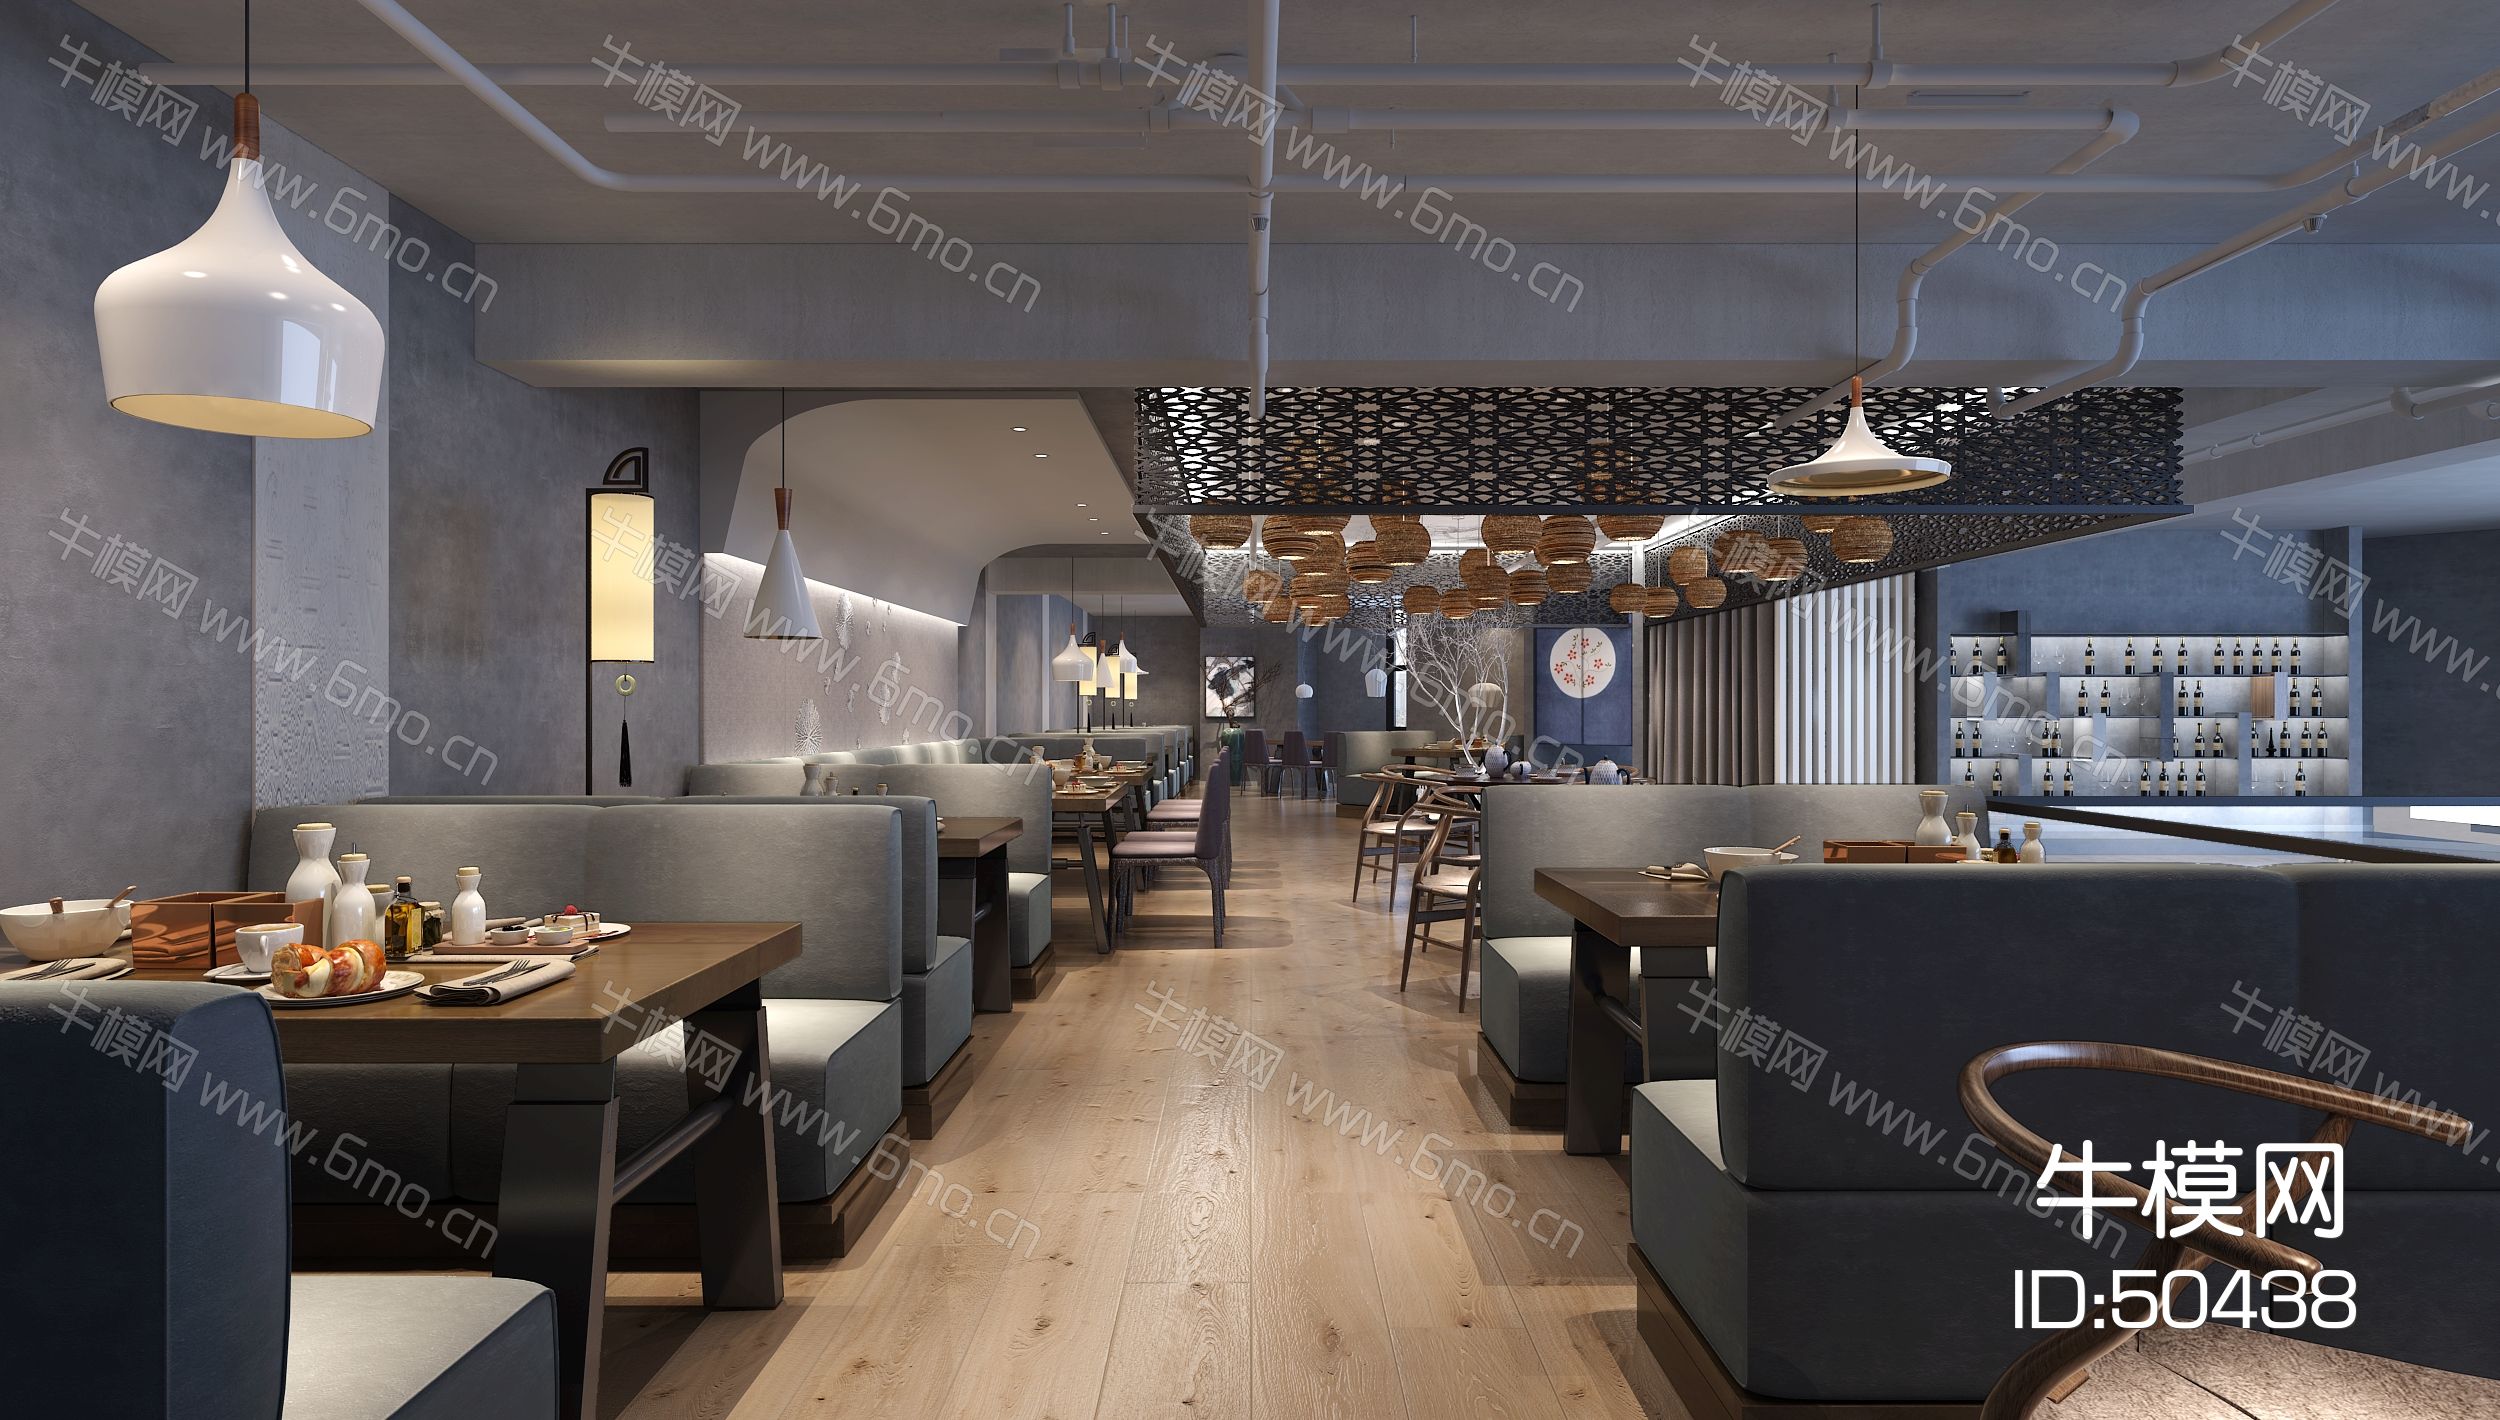 新中式餐饮店  餐厅   餐桌椅  卡座  吊灯 